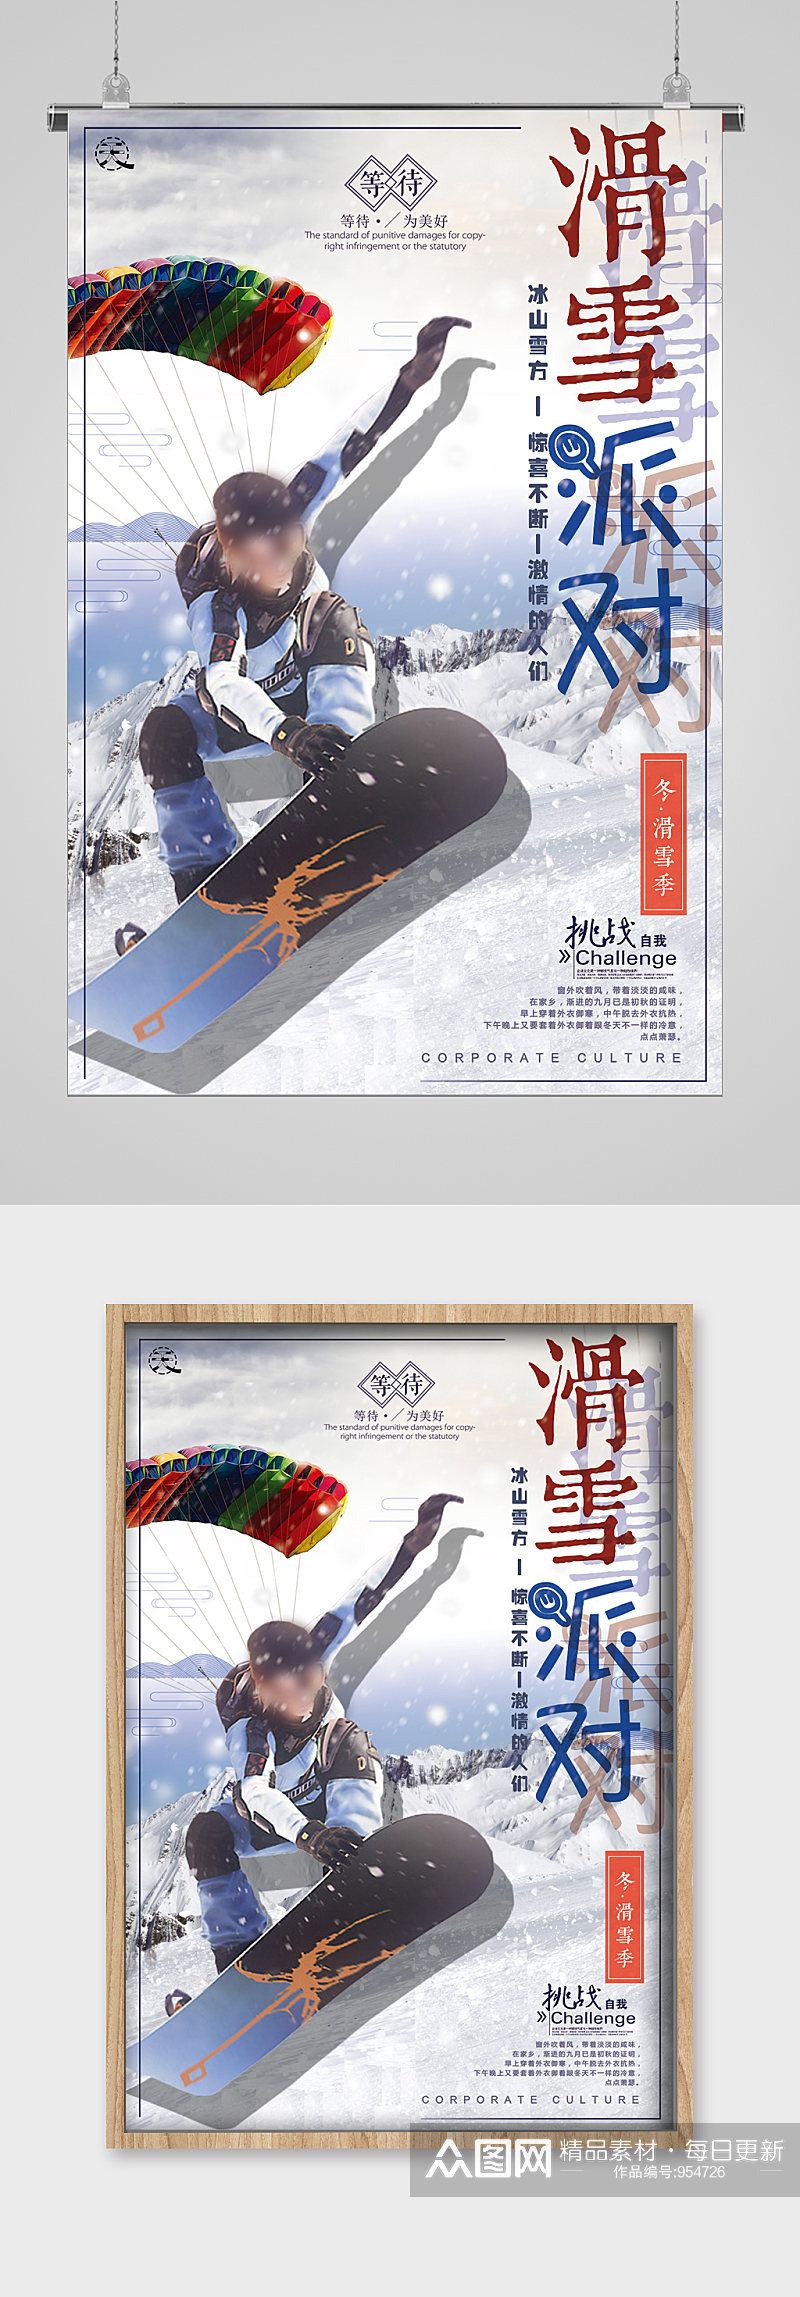 冬季滑雪滑翔伞宣传海报素材